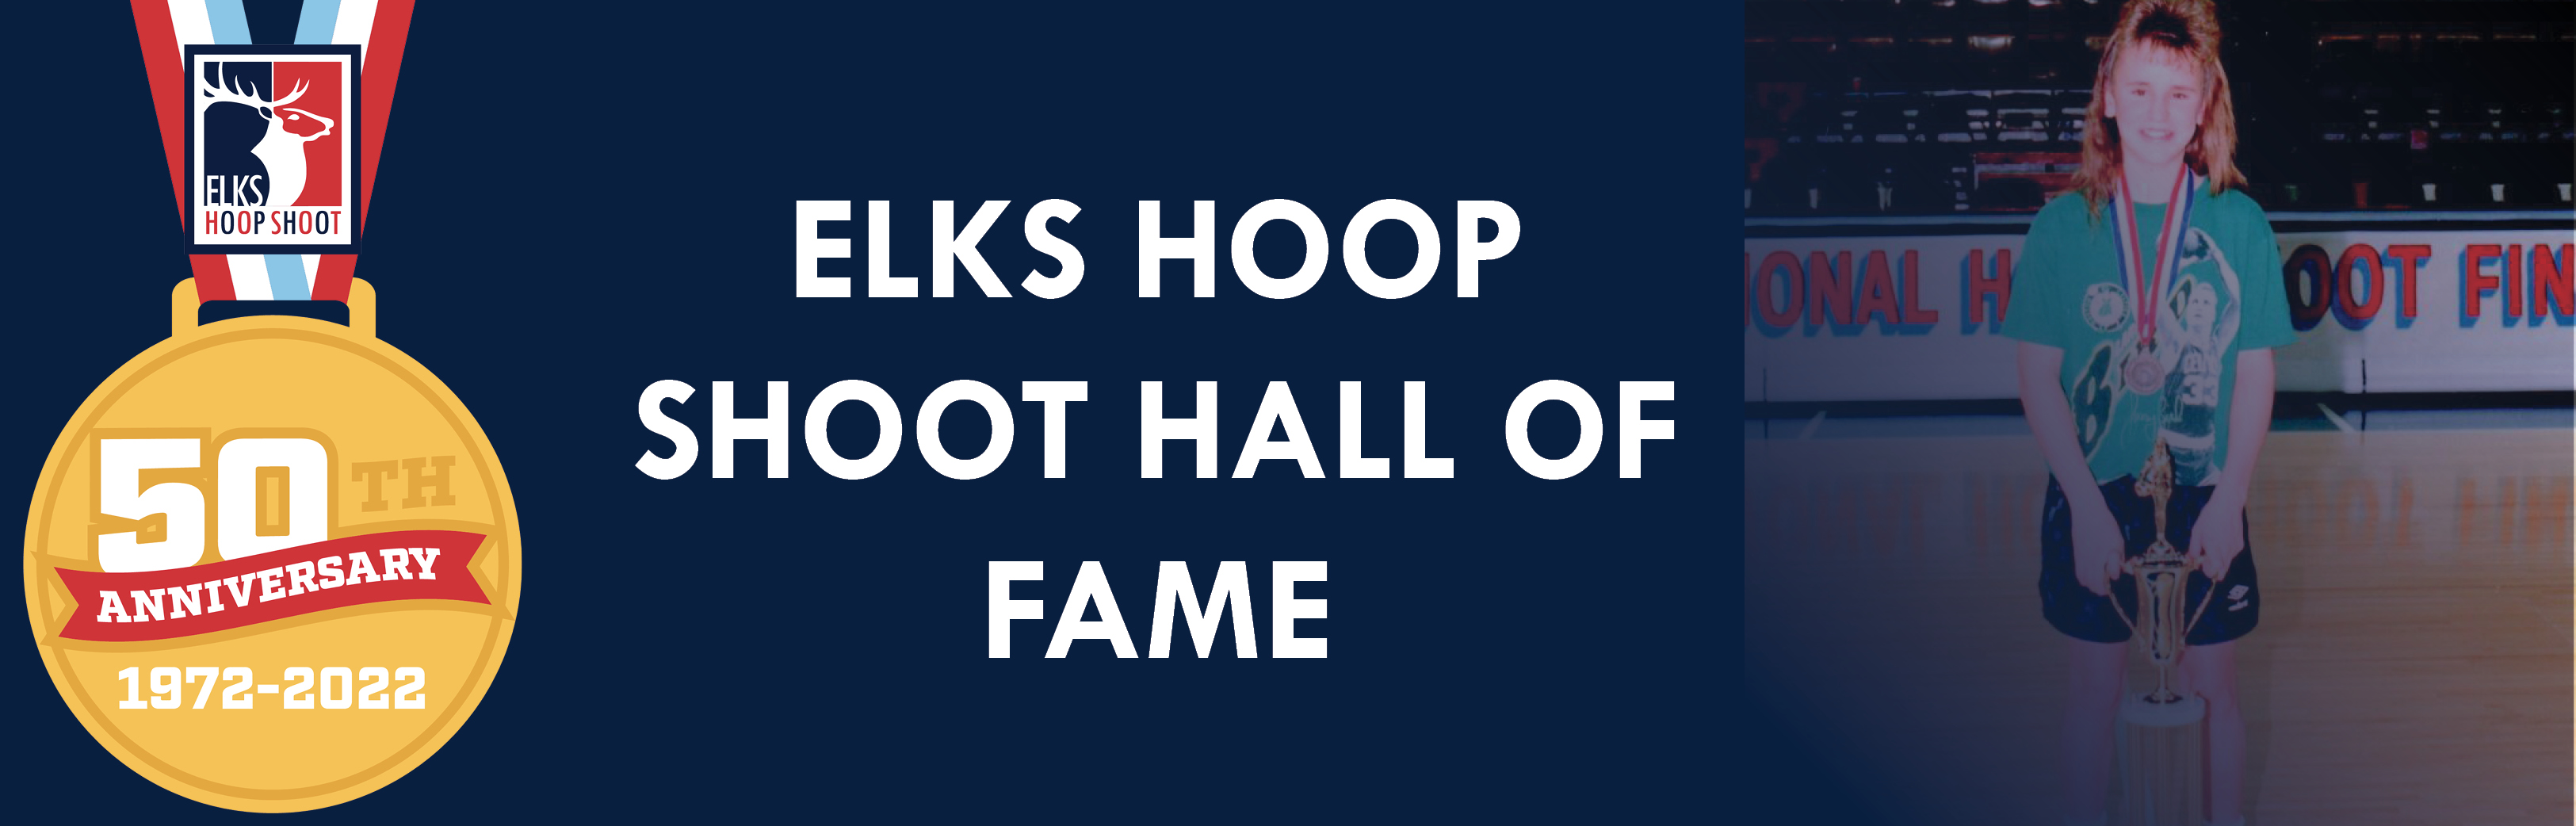 2022 Elks Hoop Shoot Hall of Fame